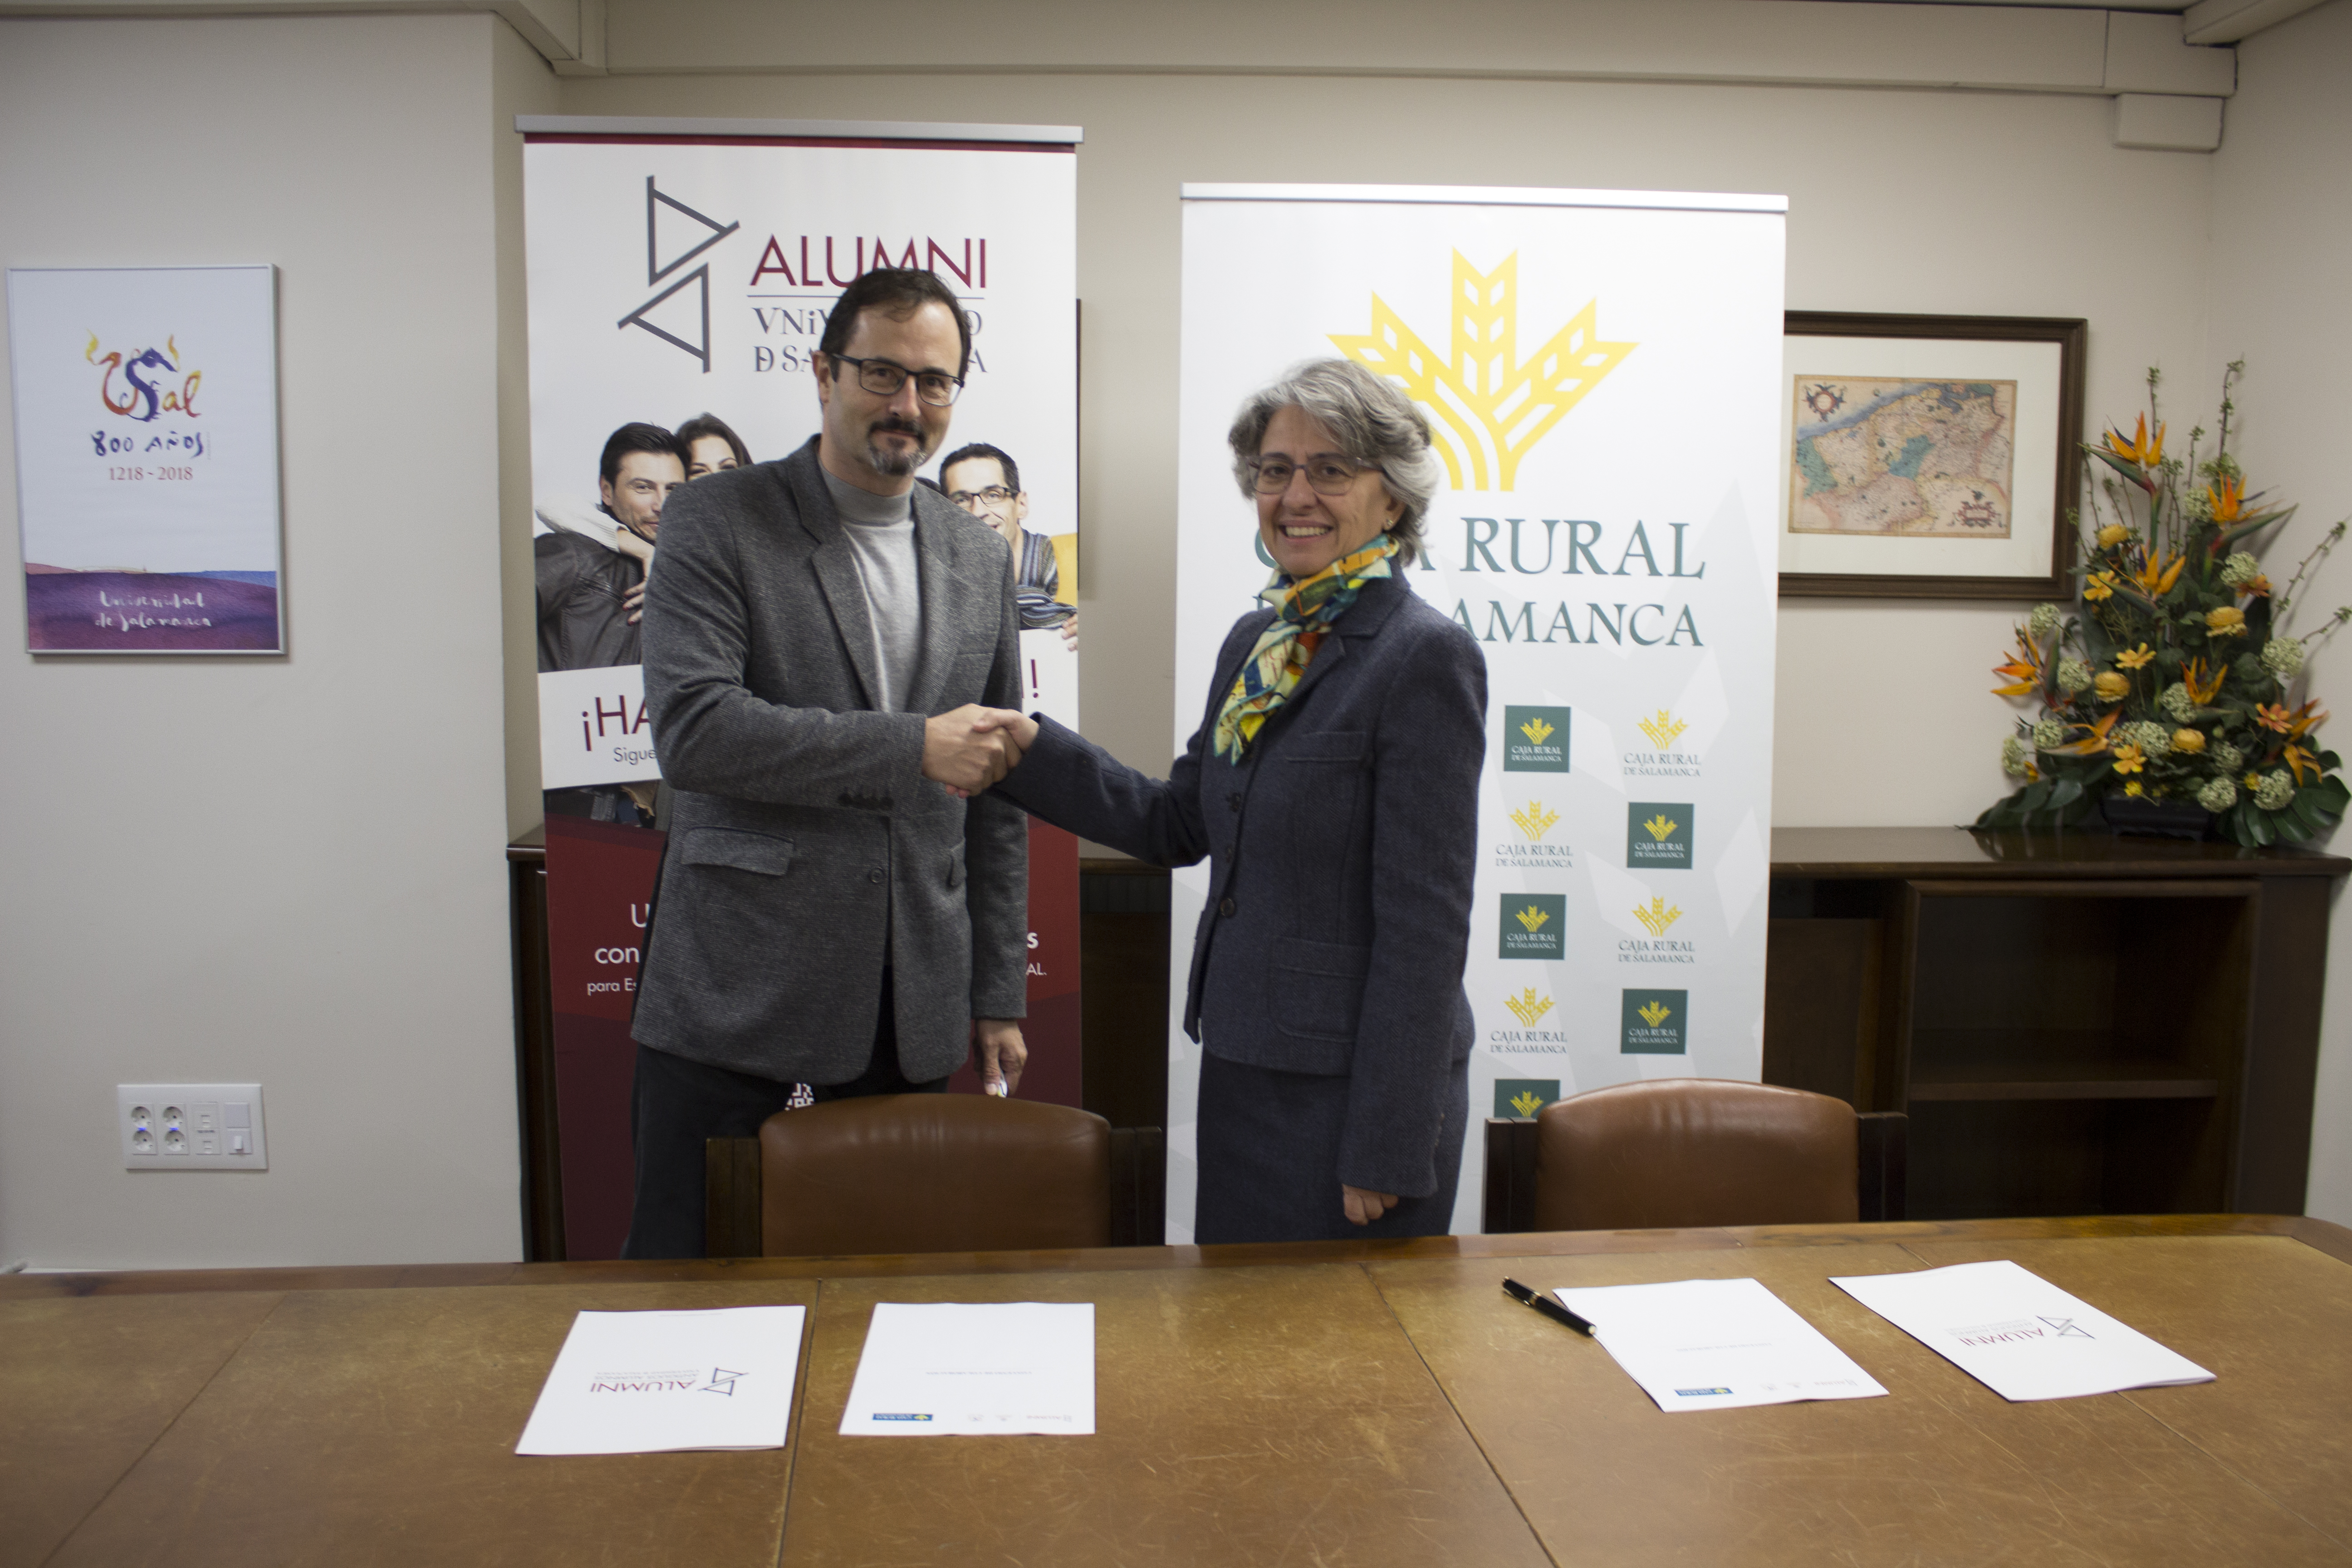 Alumni–Universidad de Salamanca y Caja Rural de Salamanca renuevan su convenio de colaboración